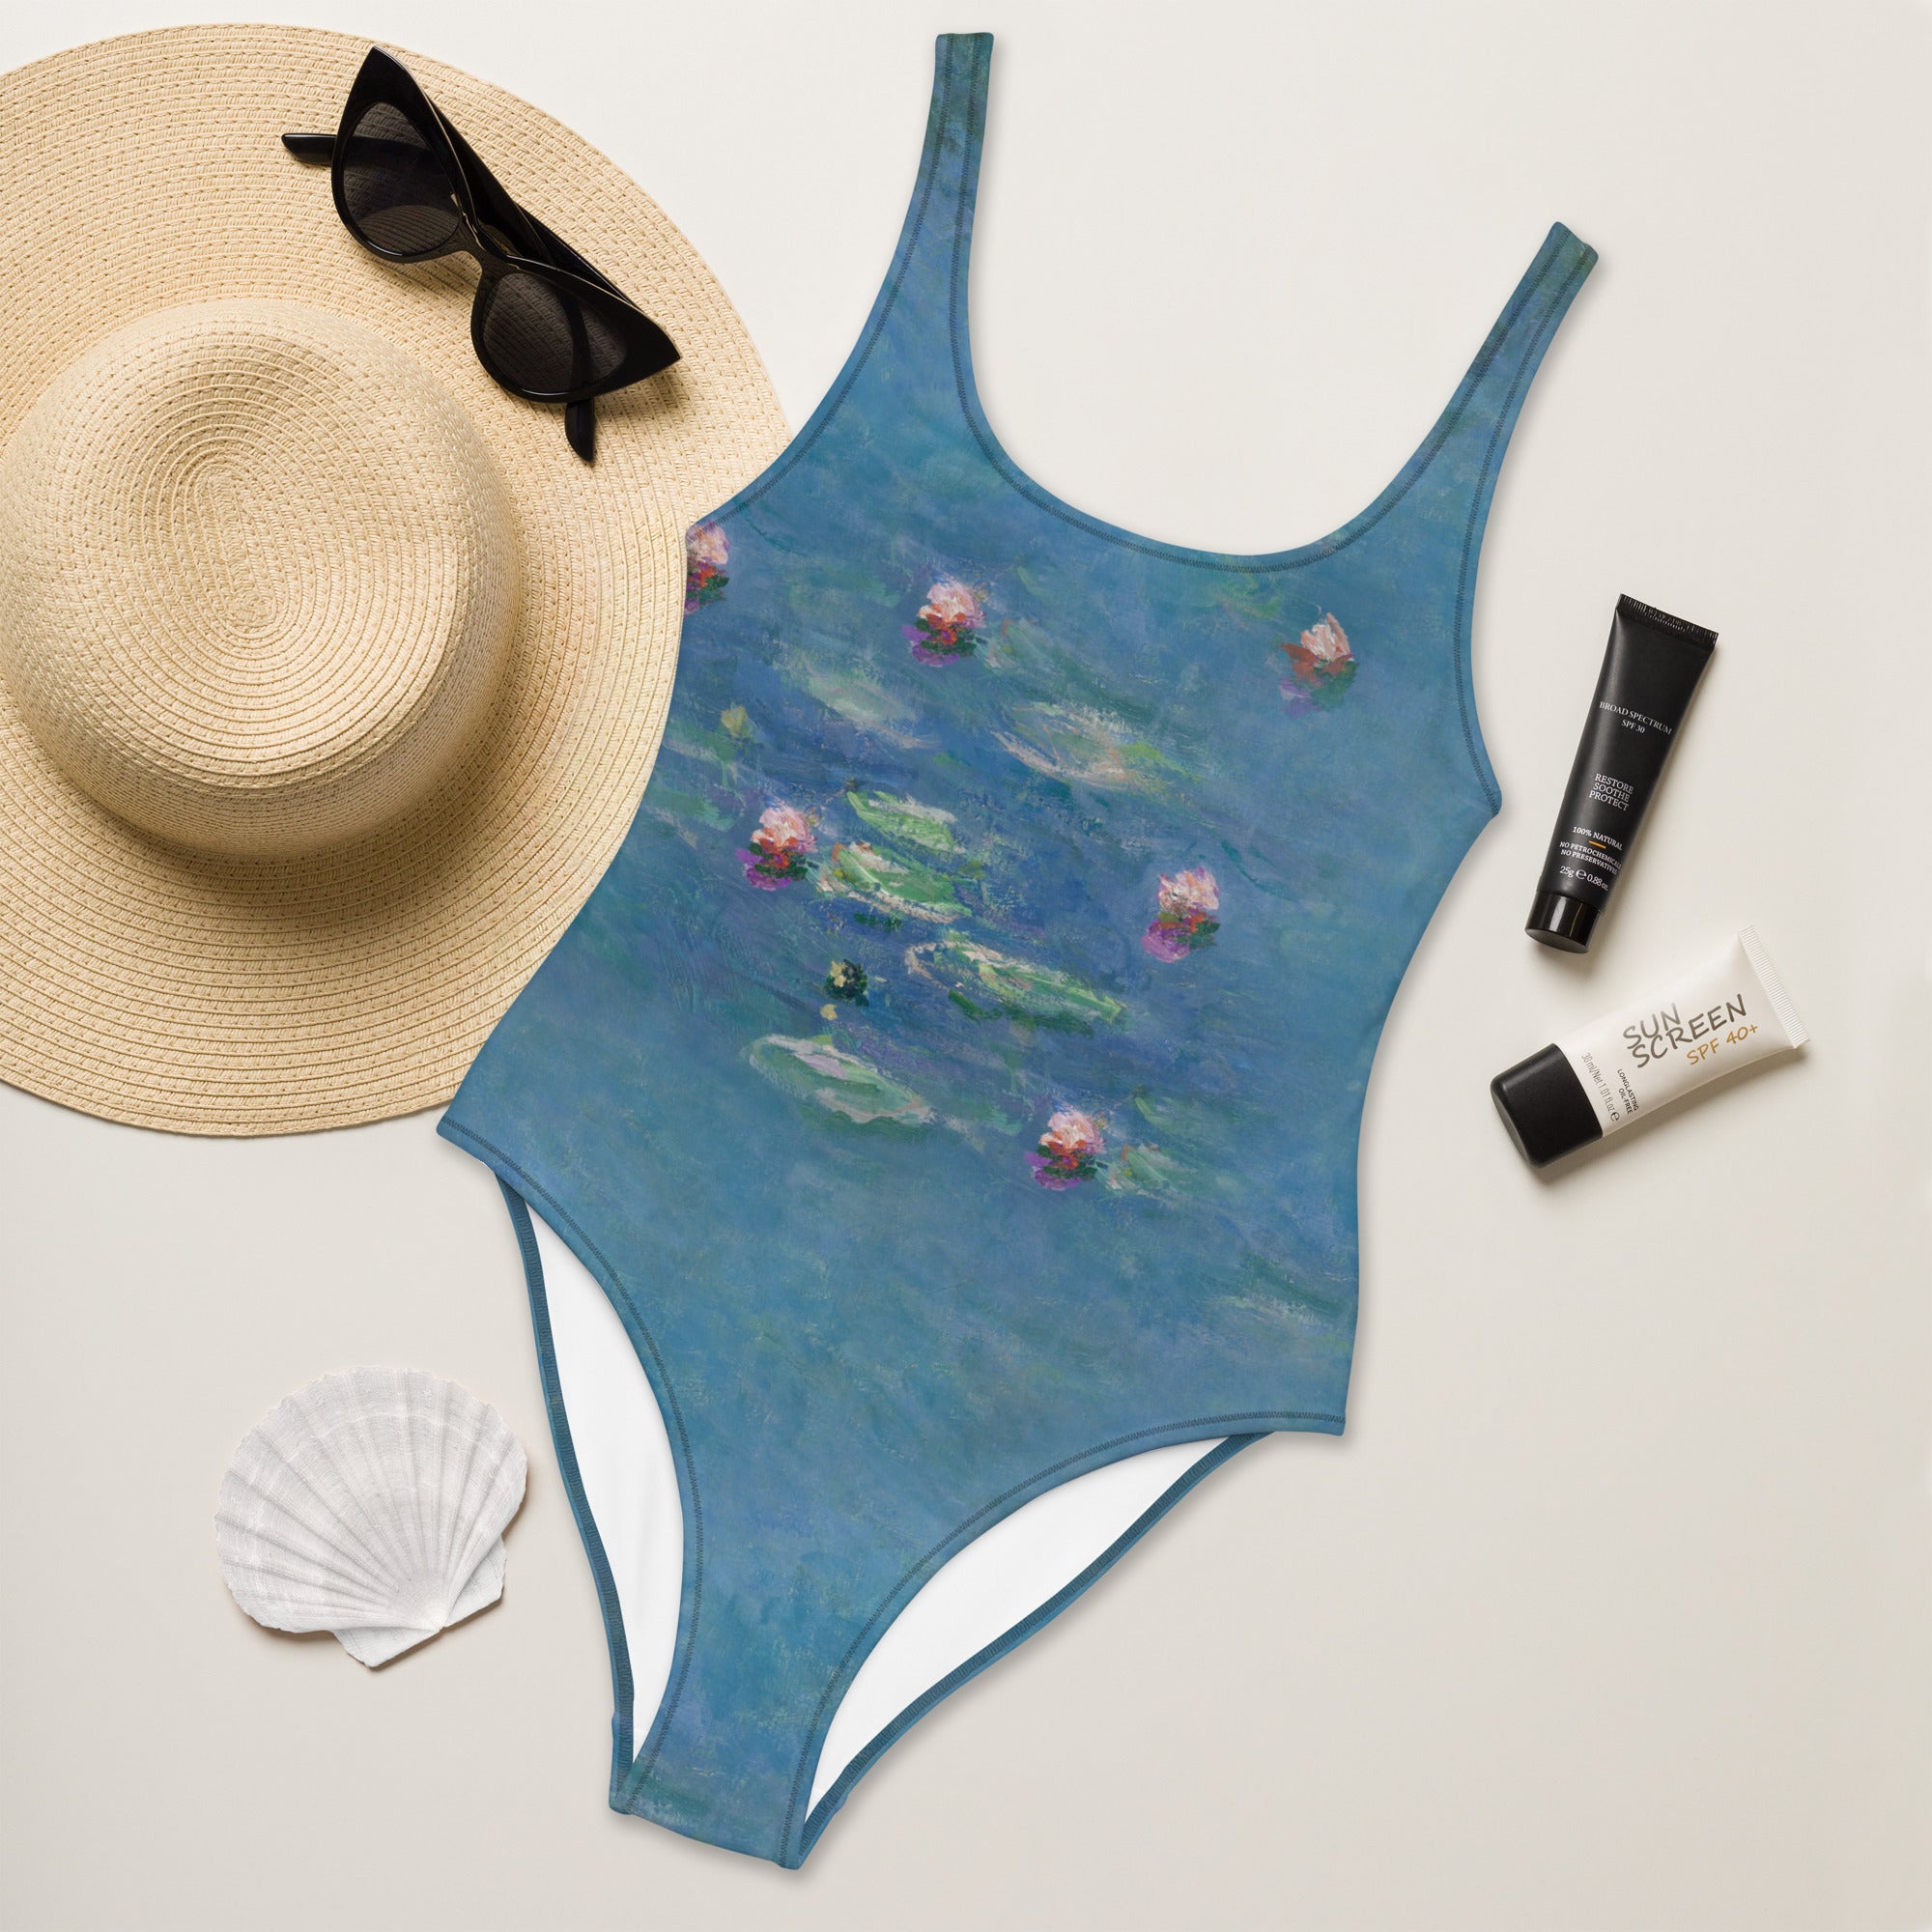 Claude Monet 'Water Lilies' Famous Painting Swimsuit | Premium Art One Piece Swimsuit